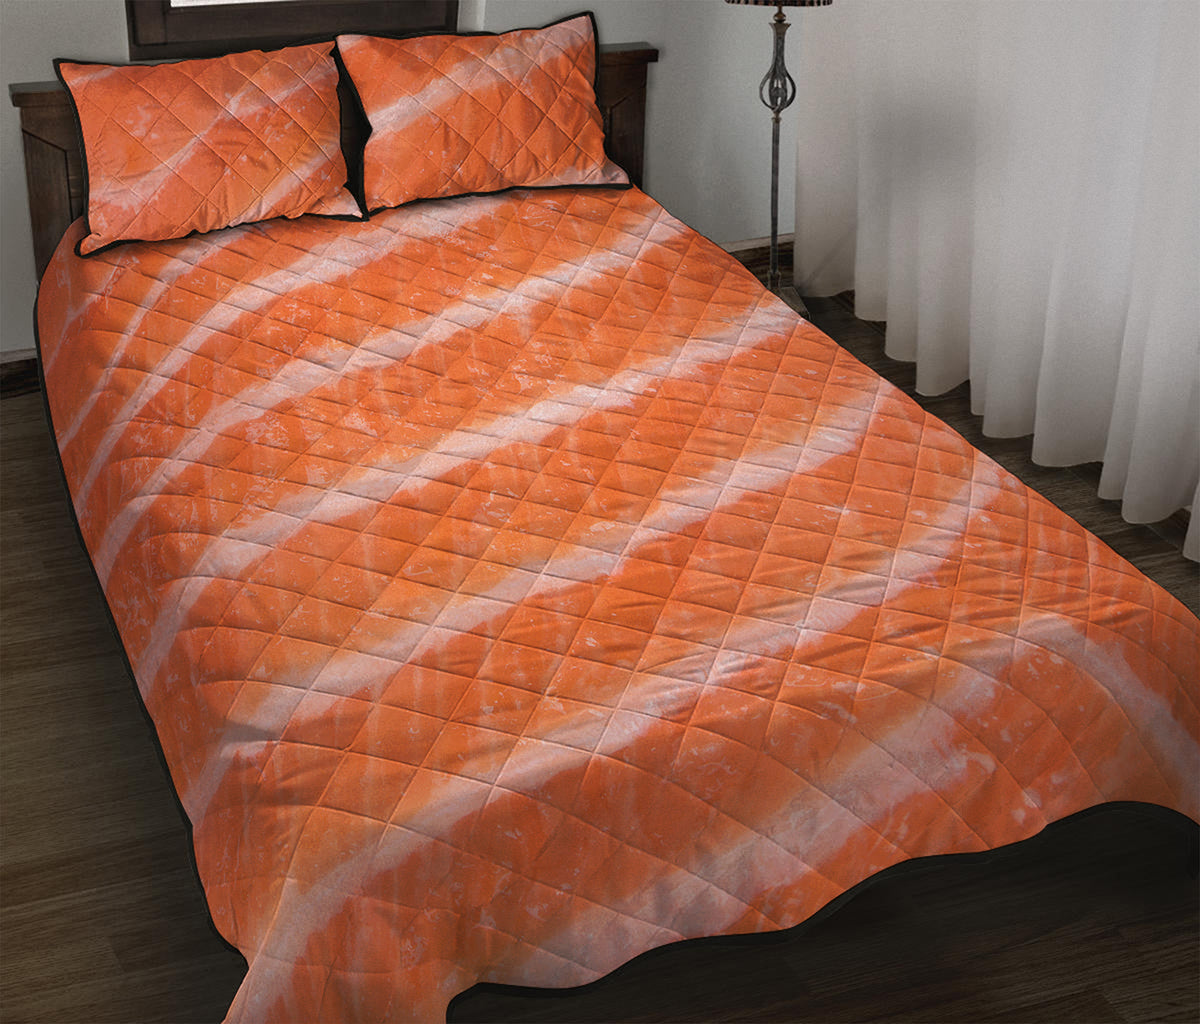 Salmon Fillet Print Quilt Bed Set